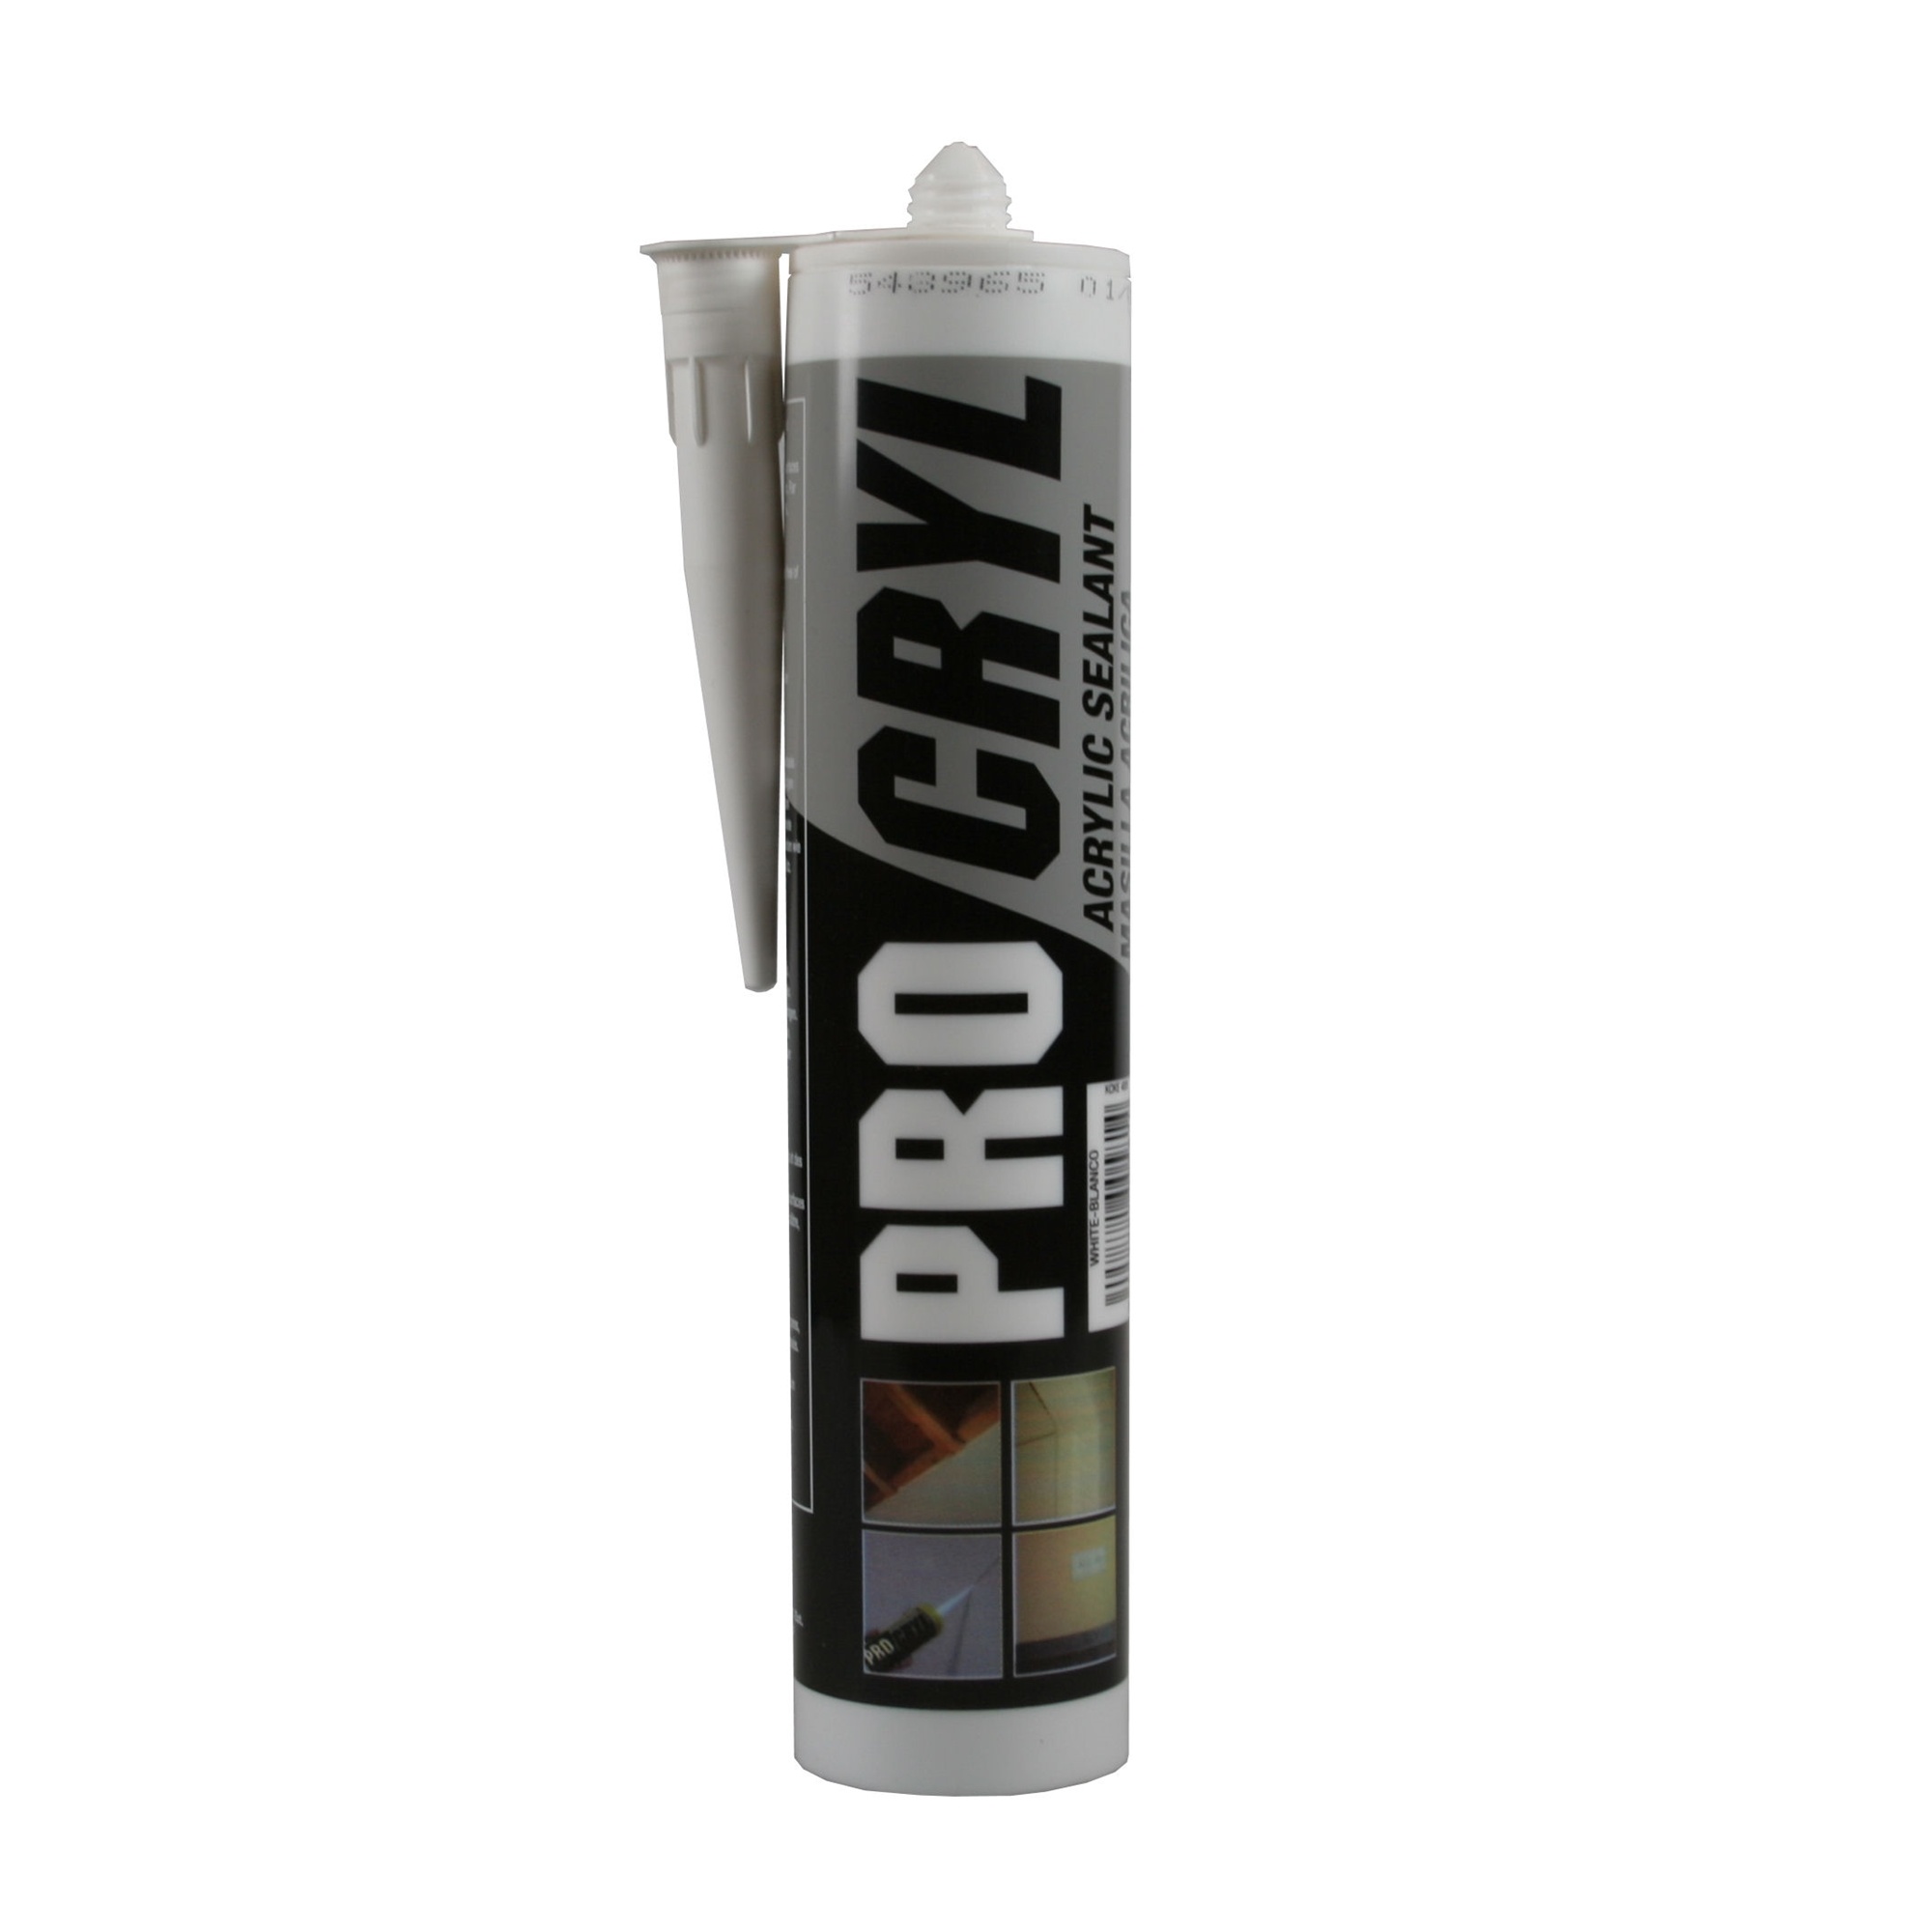 Hofftech Acrylaatkit - Acryl Kit - Wit 280 ml - Professional - Deze kit wordt compleet spuitmondje geleverd-